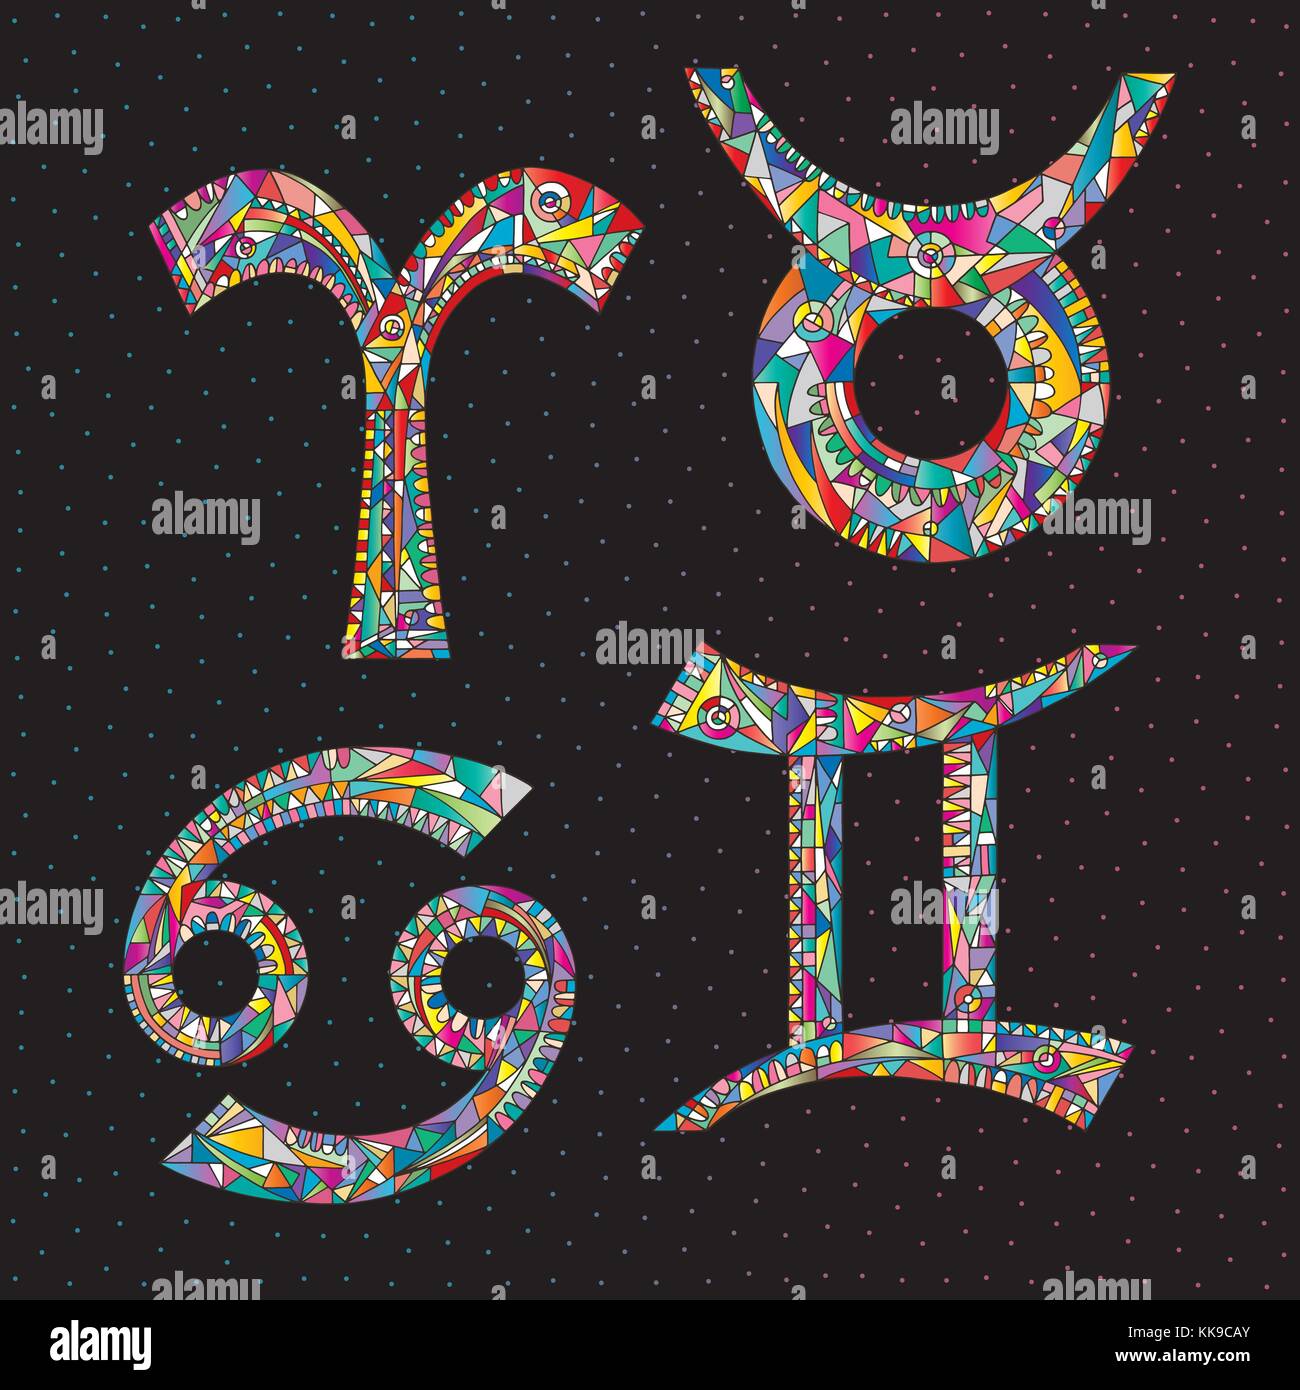 Tierkreiszeichen Widder, Stier, Zwillinge, Krebs. Hand gezeichnet Horoskop astrologische Symbole Raumzeiger Abbildung Stock Vektor